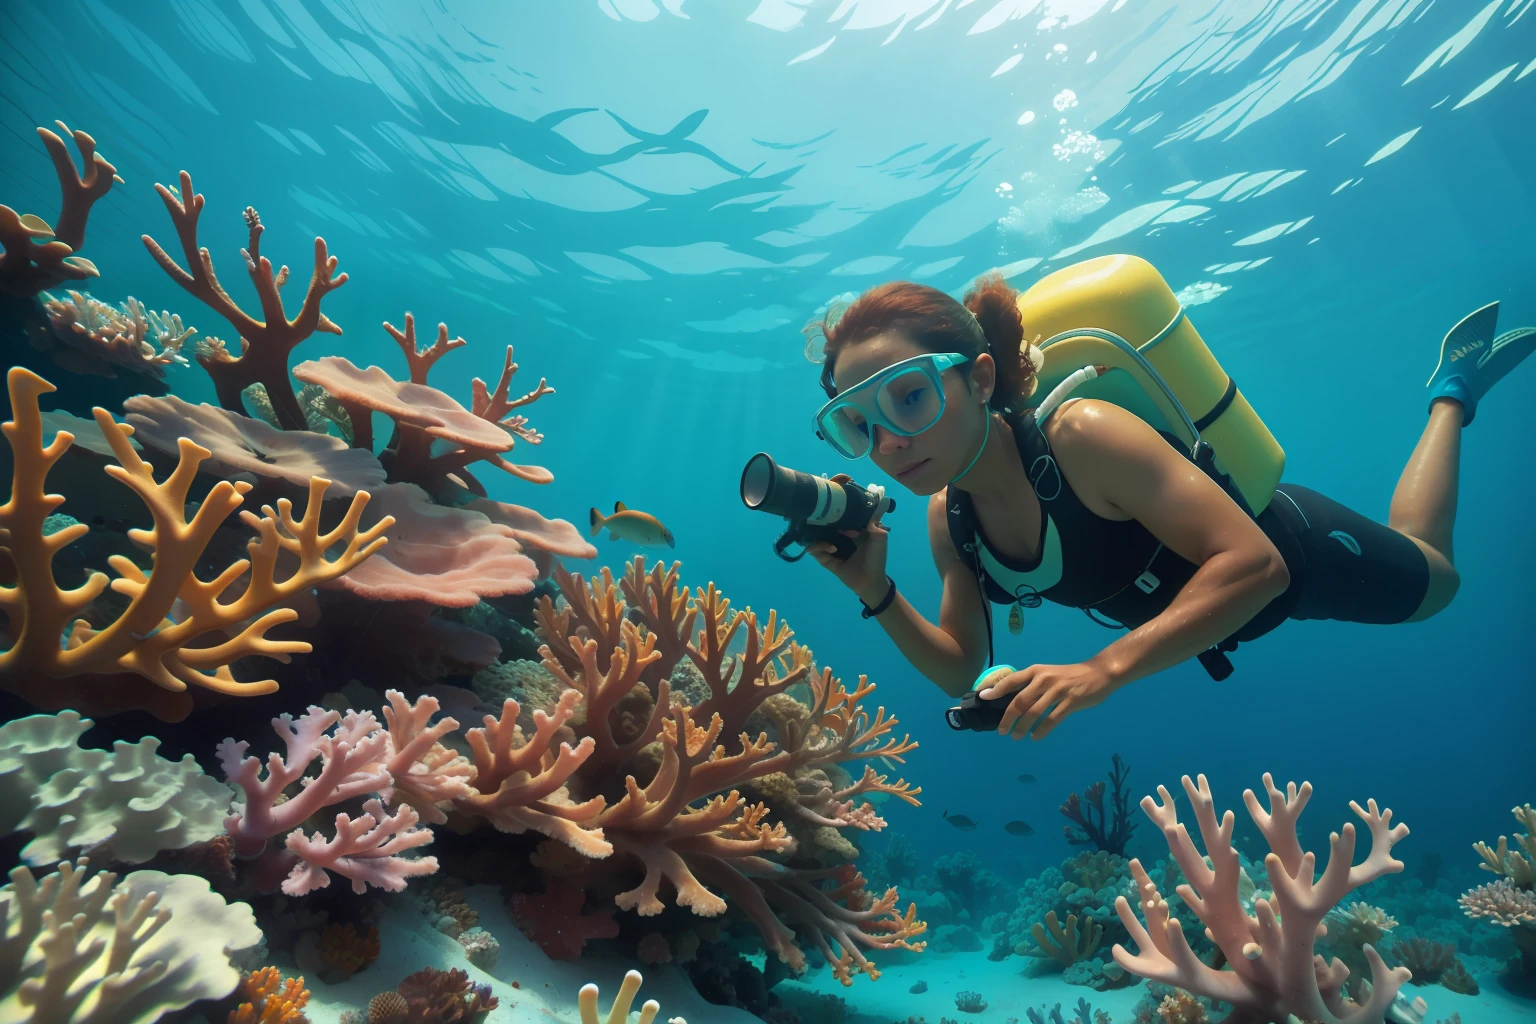 日期: 2013 国家: 巴哈馬描述: 一位成年巴哈馬海洋生物學家仔細研究水下充滿活力的珊瑚礁, 在大氣中加入環境管理元素.